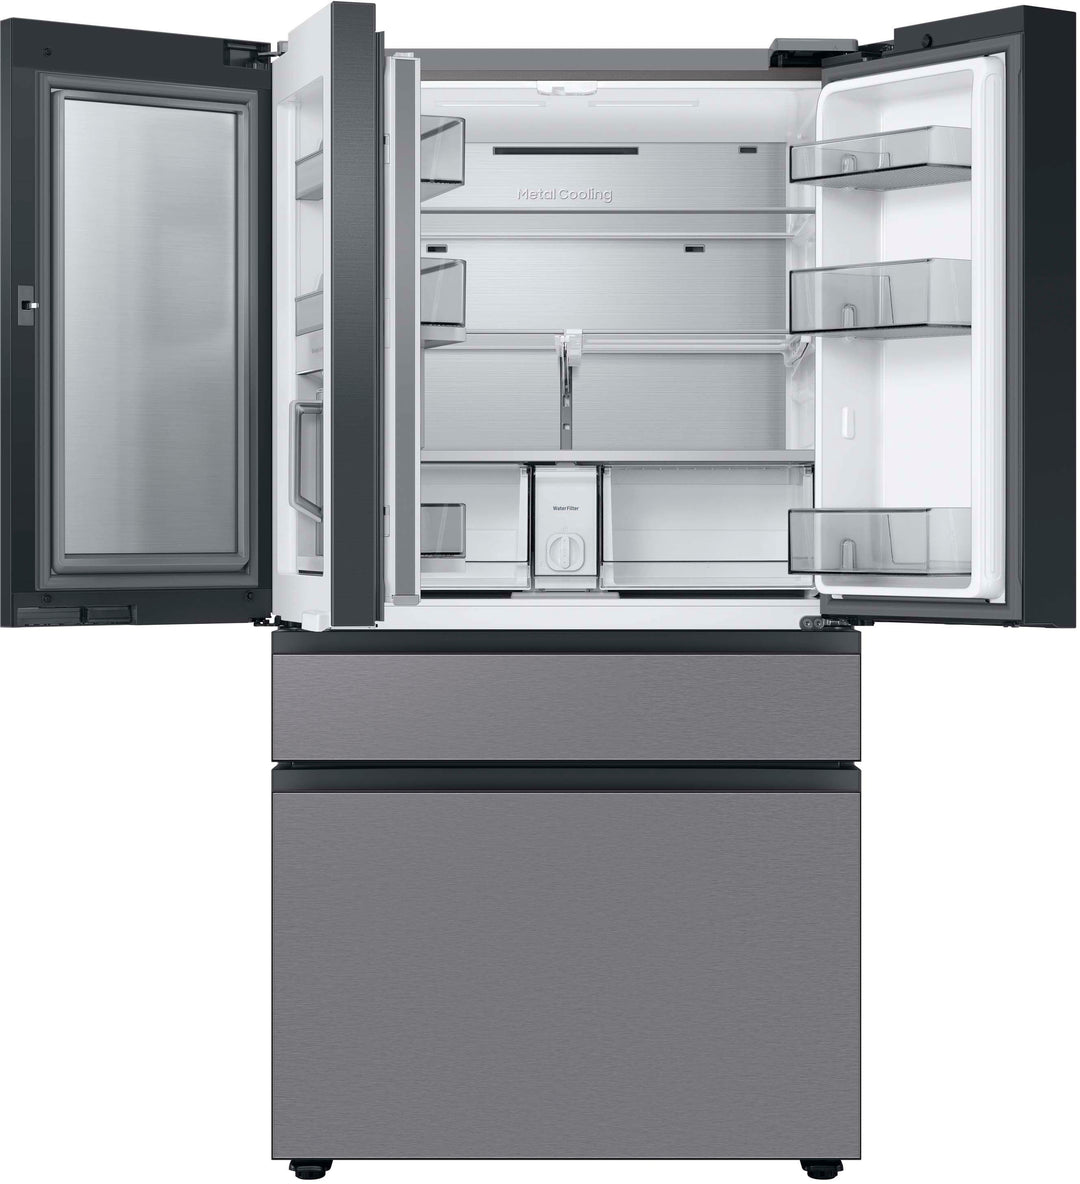 Samsung - Bespoke 29 cu. ft 4-Door French Door Refrigerator with Beverage Center - Stainless steel_3